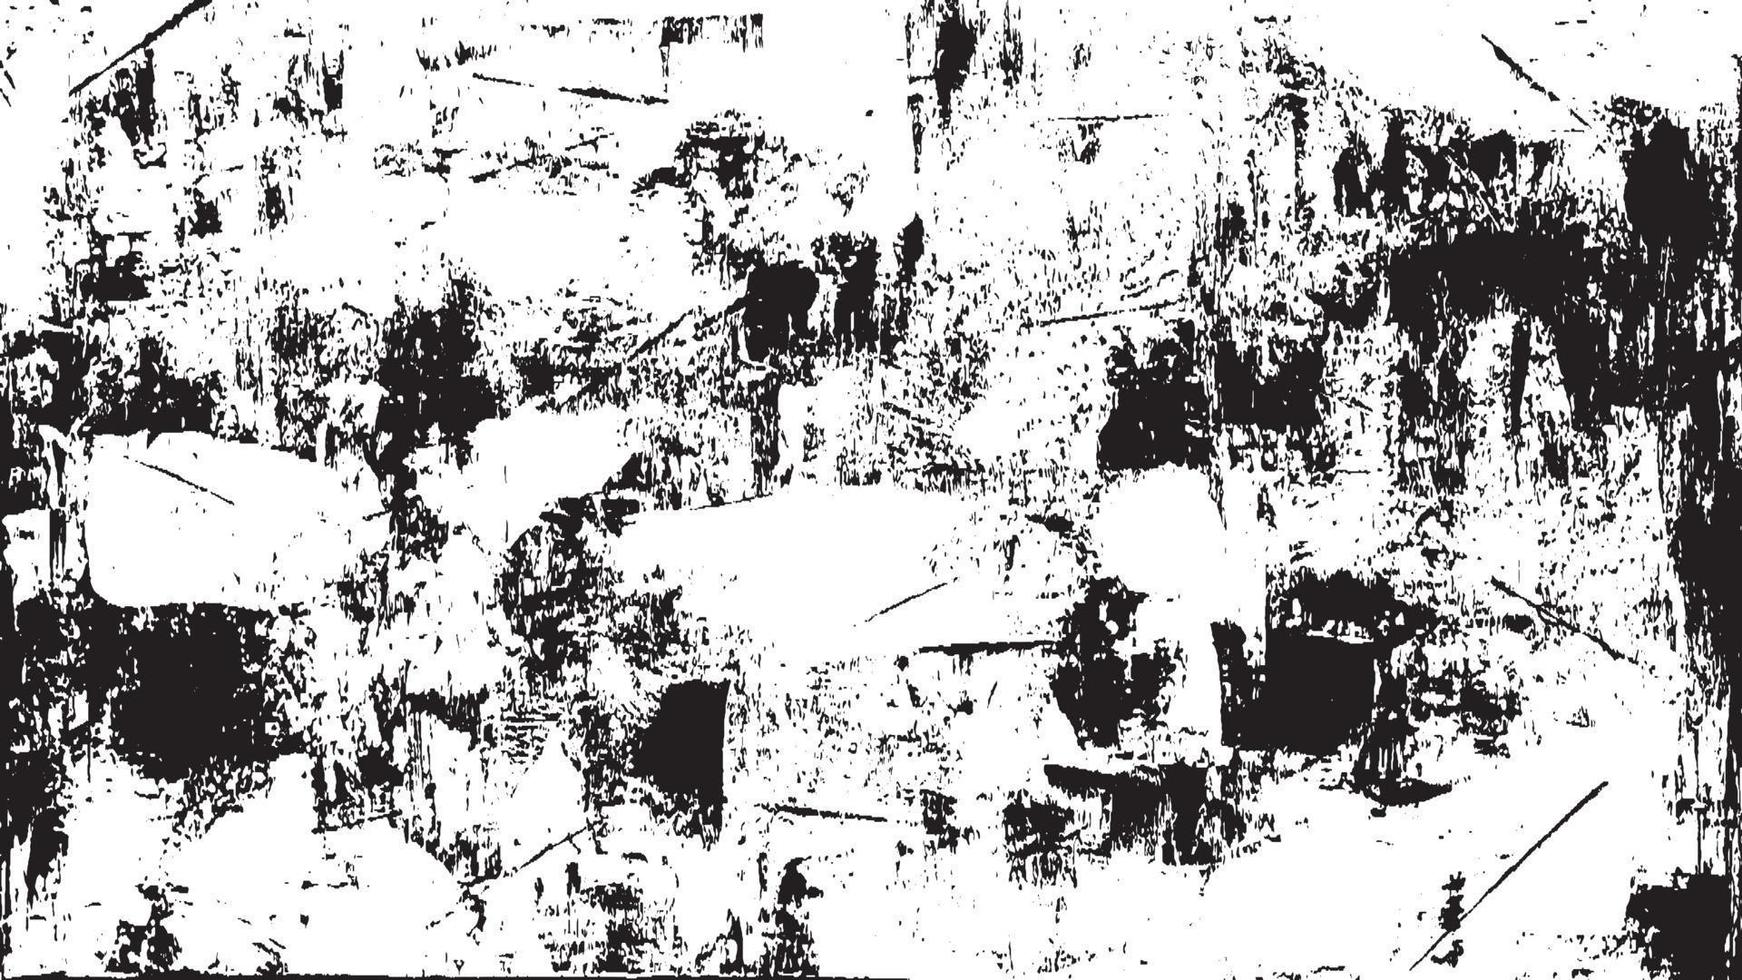 Grunge-Textur-Effekt. Distressed Overlay grob strukturiert. abstraktes Vintage-Monochrom. schwarz isoliert auf weißem Hintergrund. grafikdesignelement halbtonstilkonzept für banner, flyer, poster usw vektor